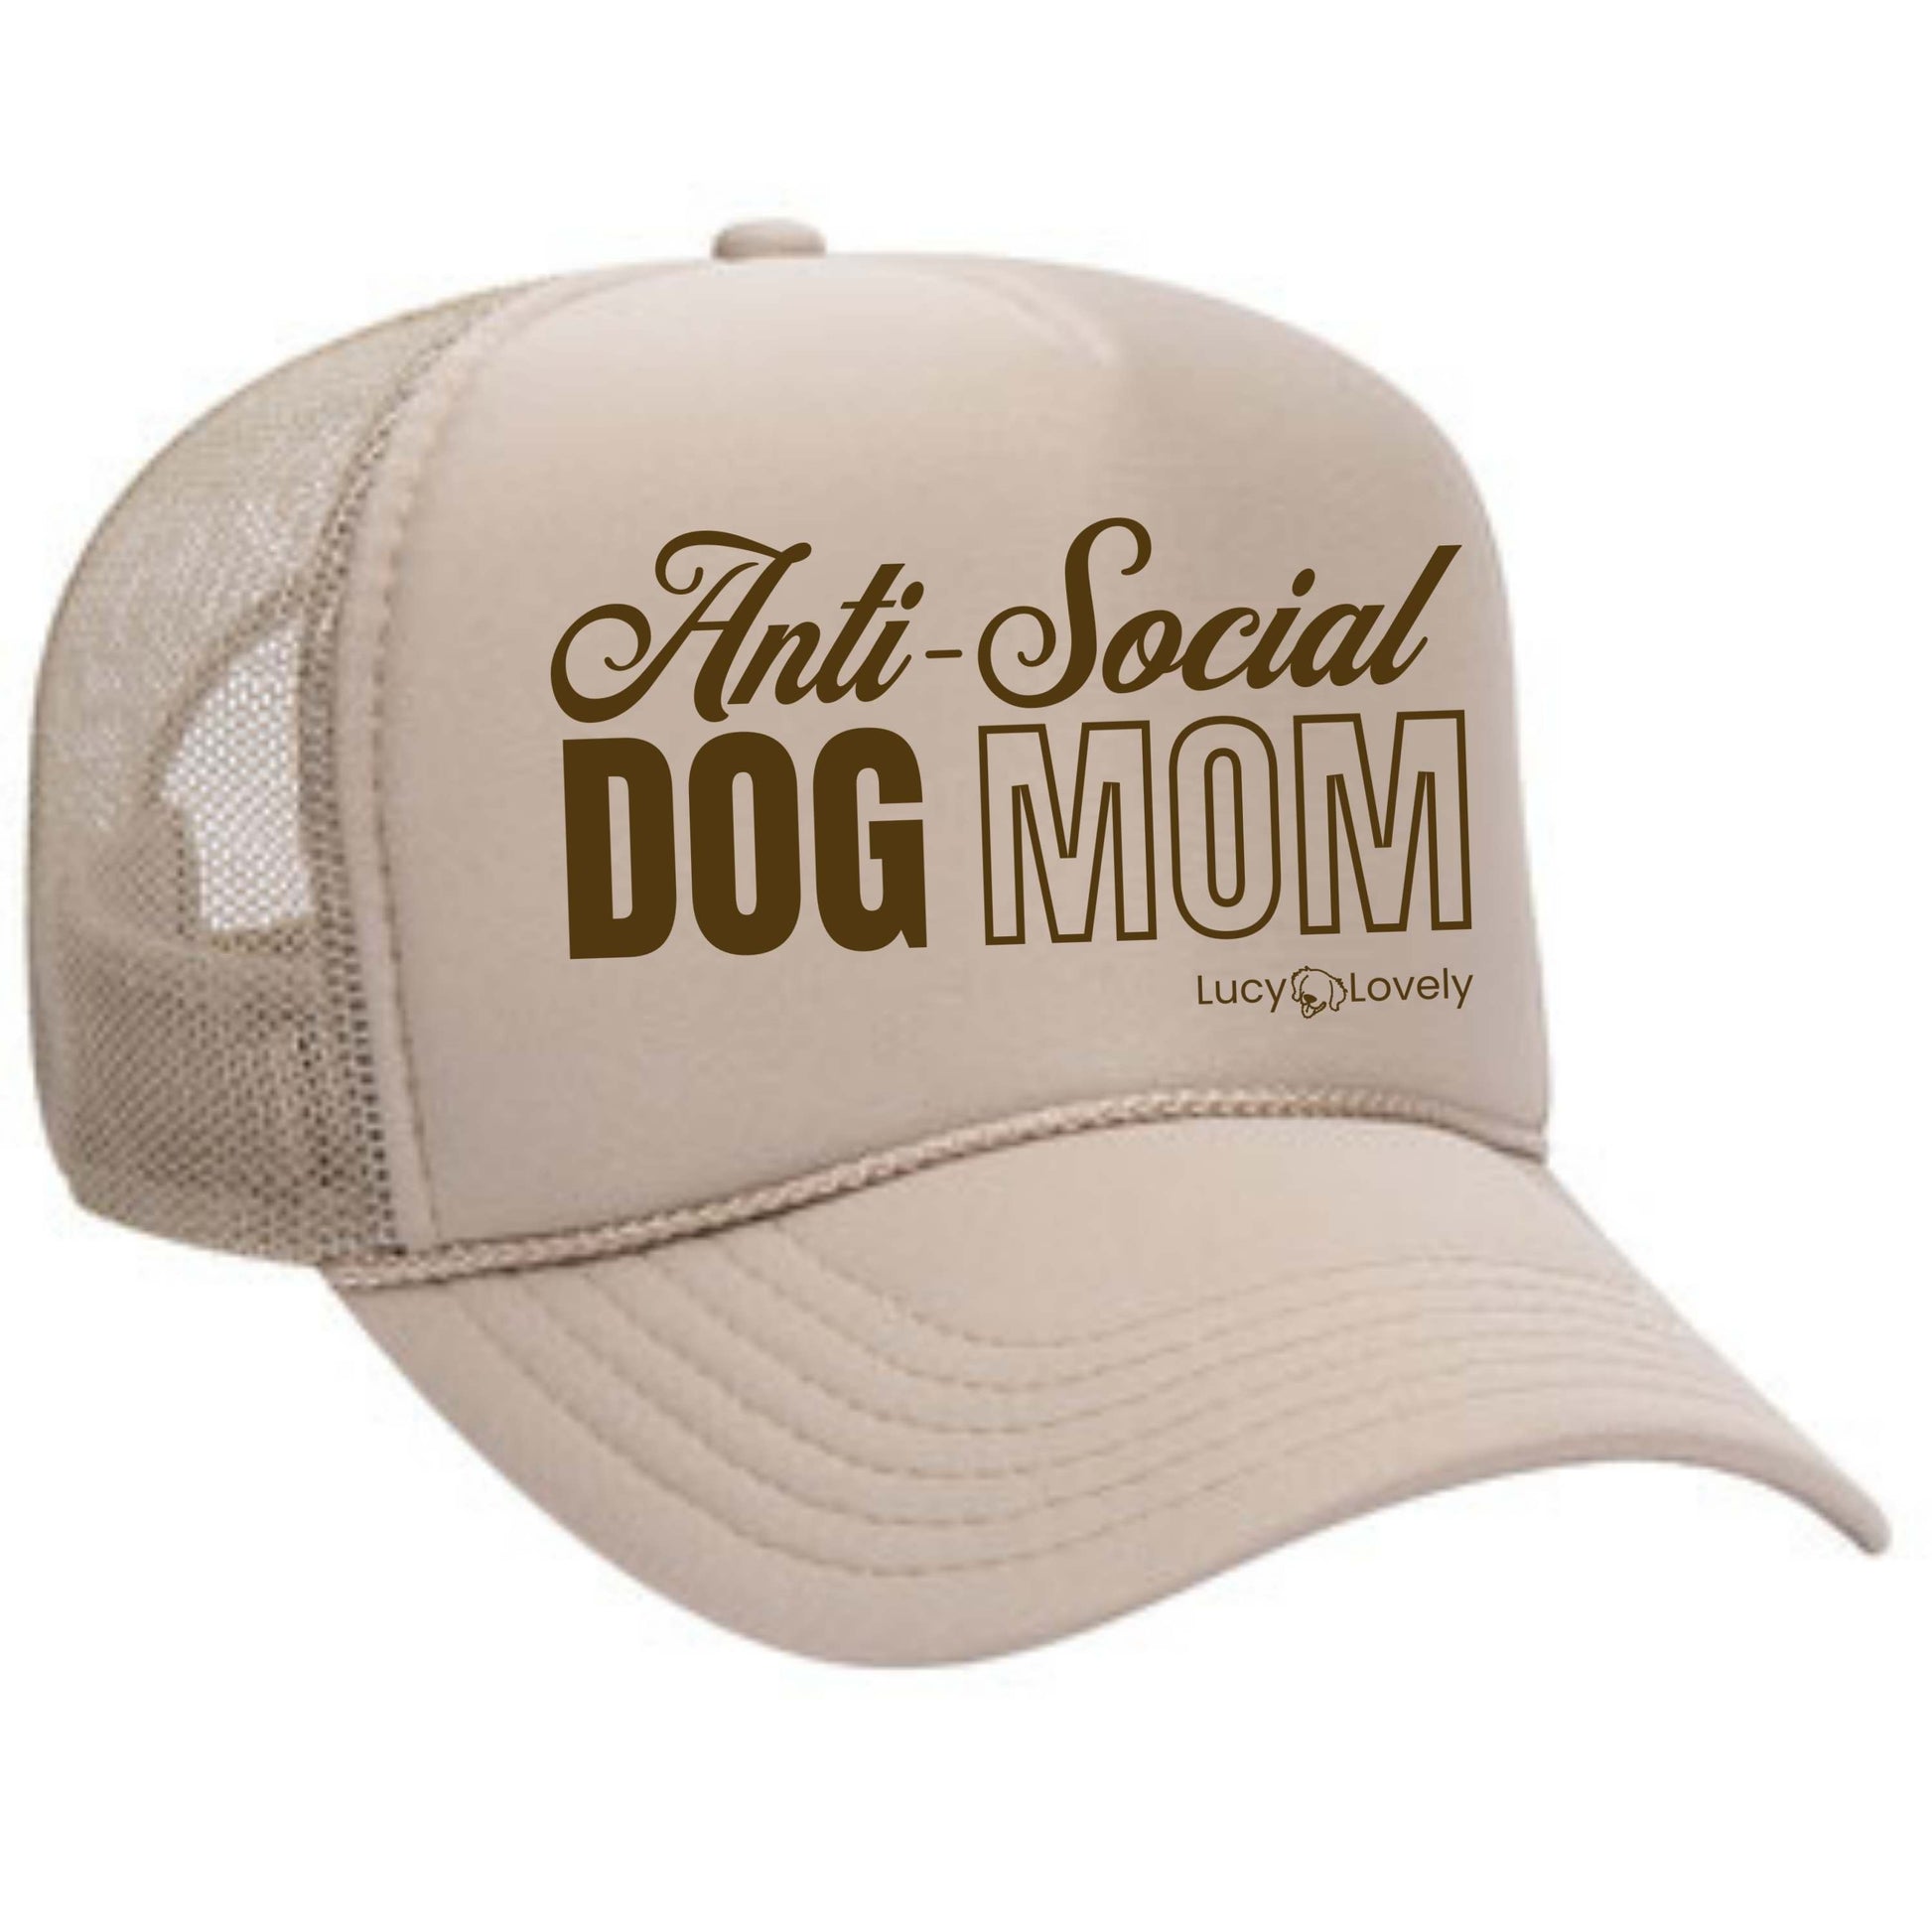 Anti-social dog mom foam trucker hat, dog mom apparel, dog mom hat